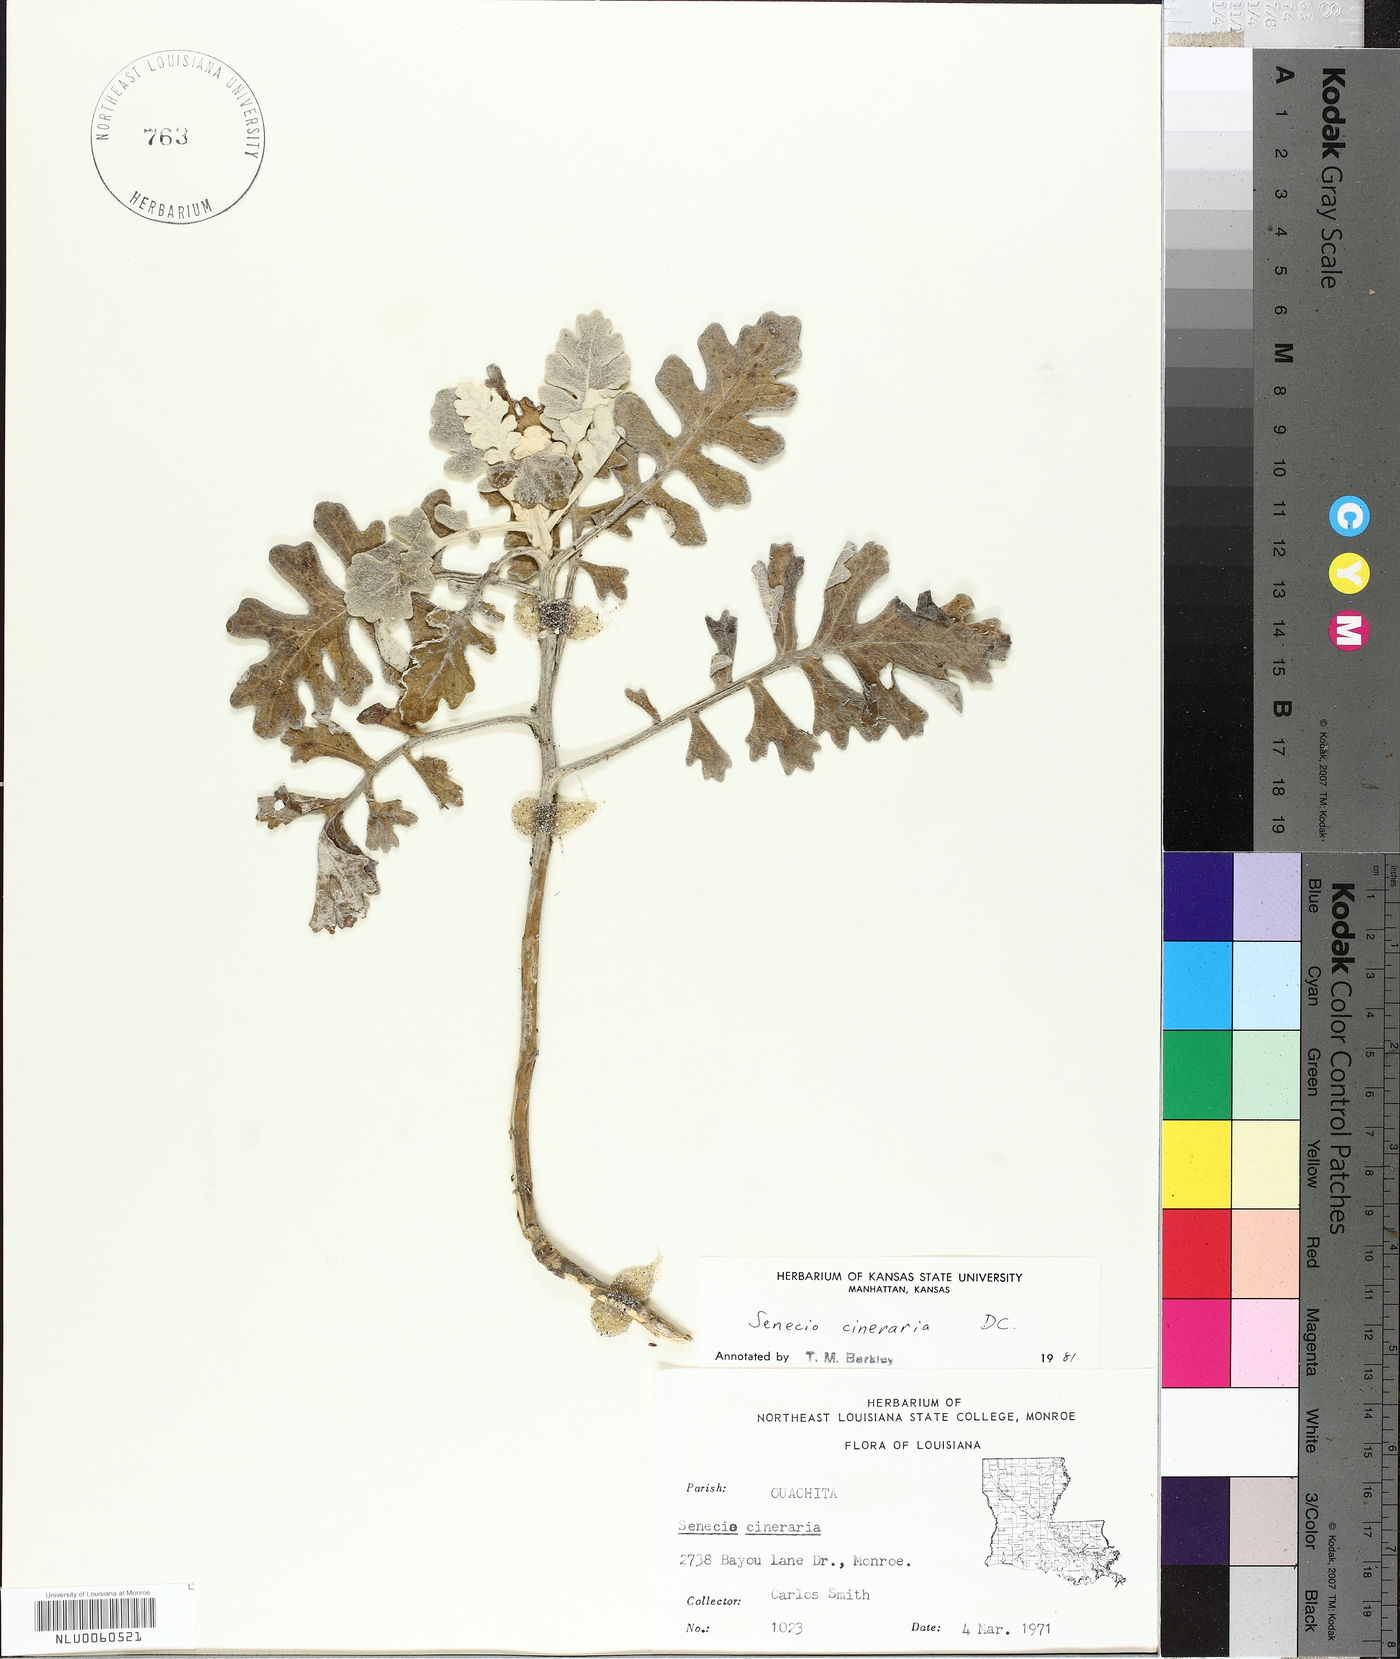 Senecio bicolor subsp. cineraria image